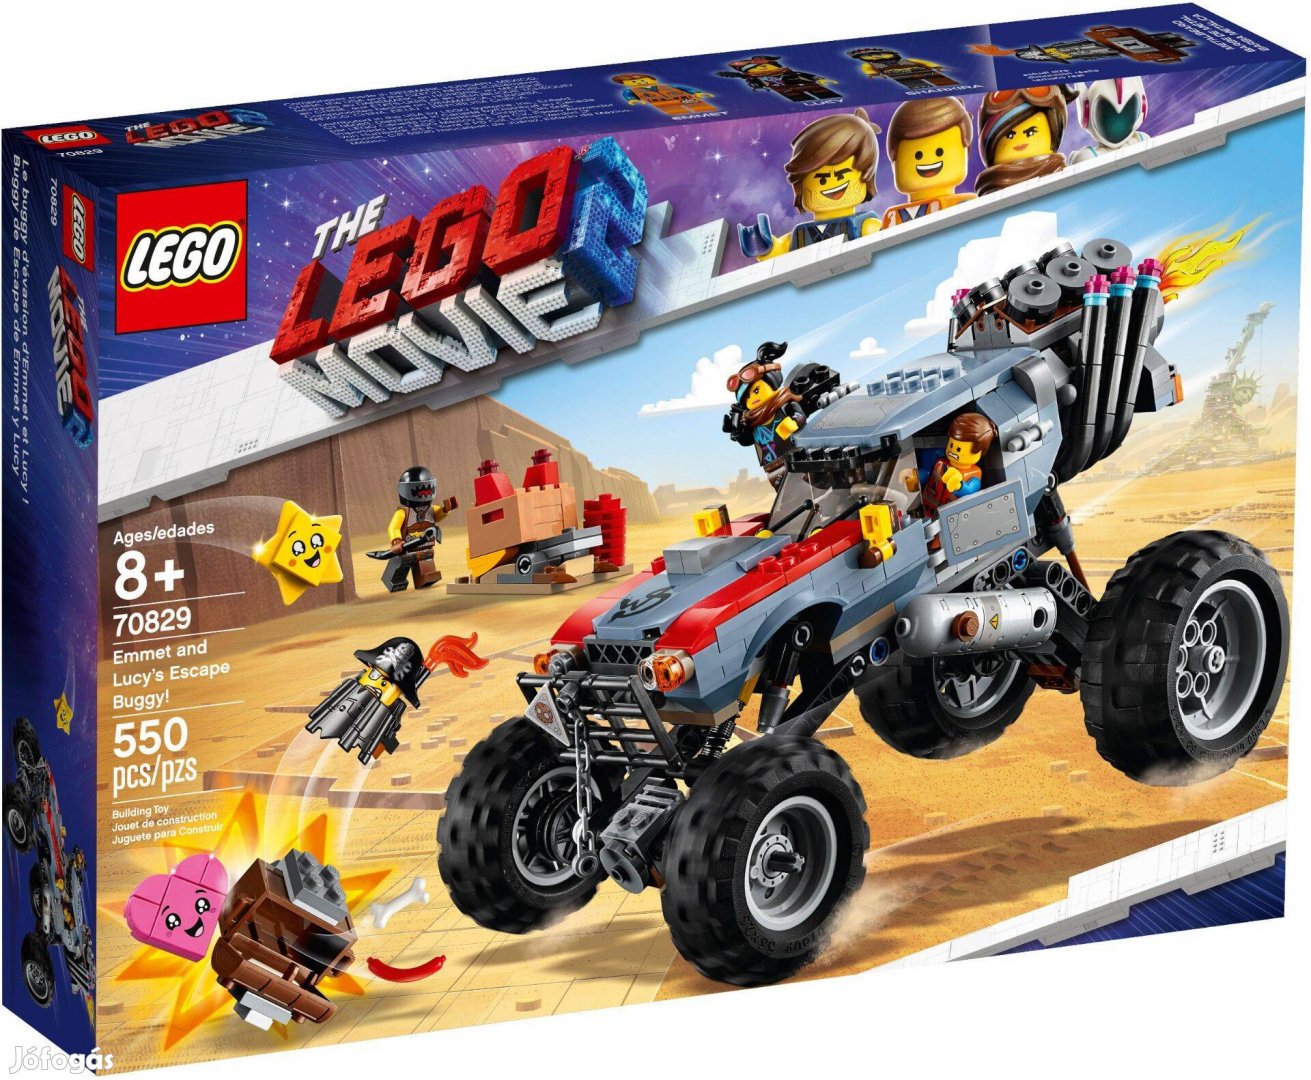 LEGO Movie 70829 Emmet and Lucy's Escape Buggy! bontatlan, új